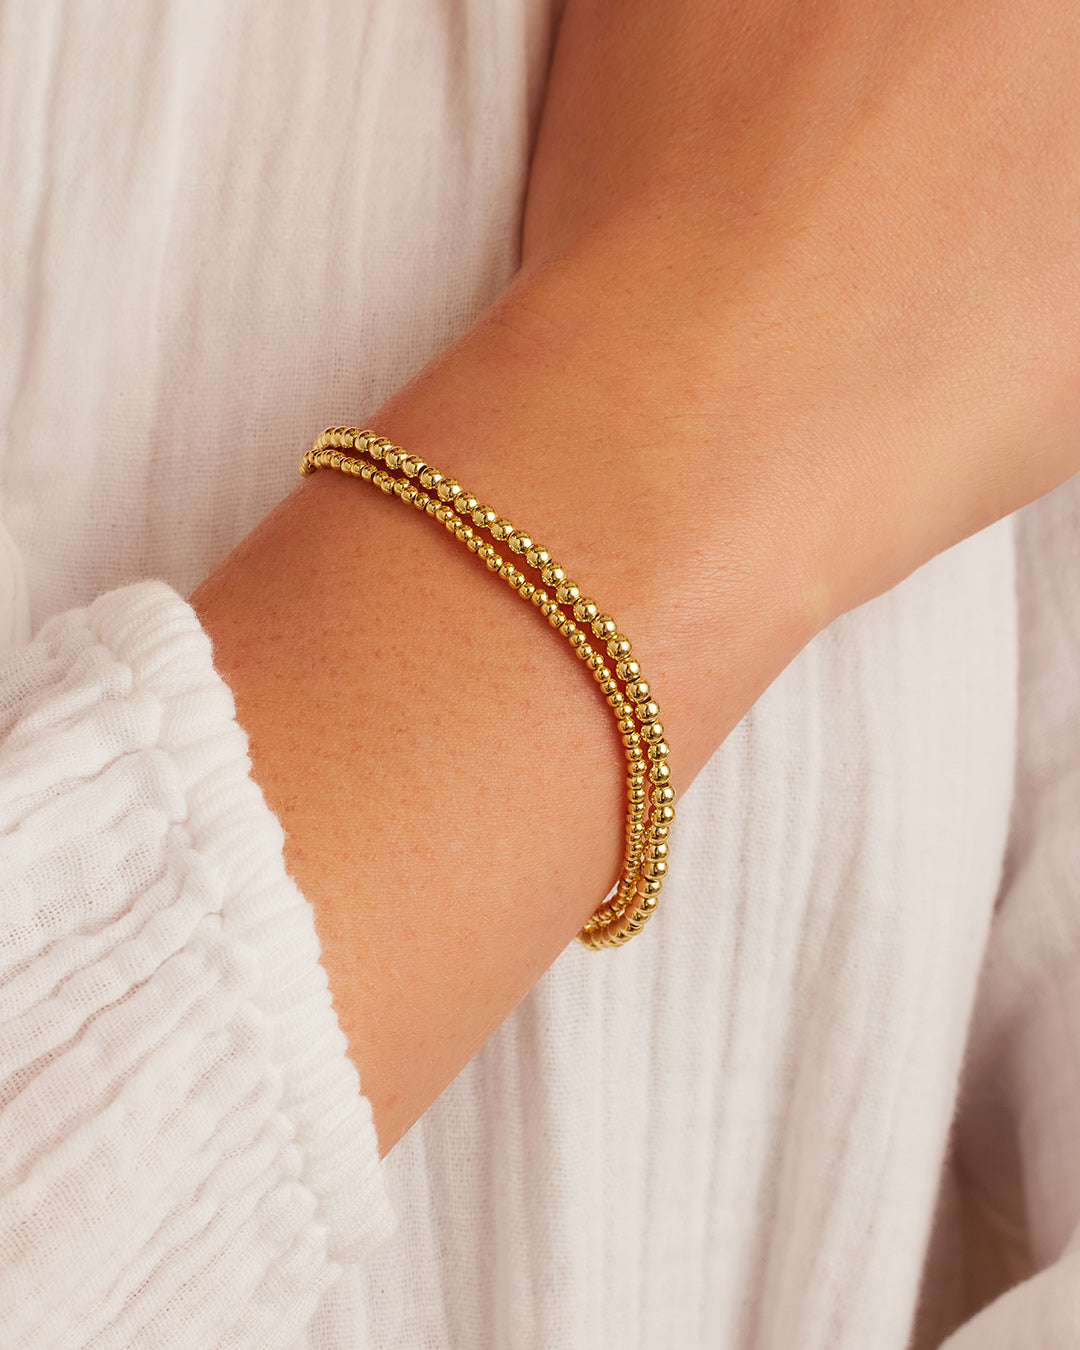 Gold Beads Bracelet  Gold earrings models, Gold bead bracelets, Beaded  bracelets